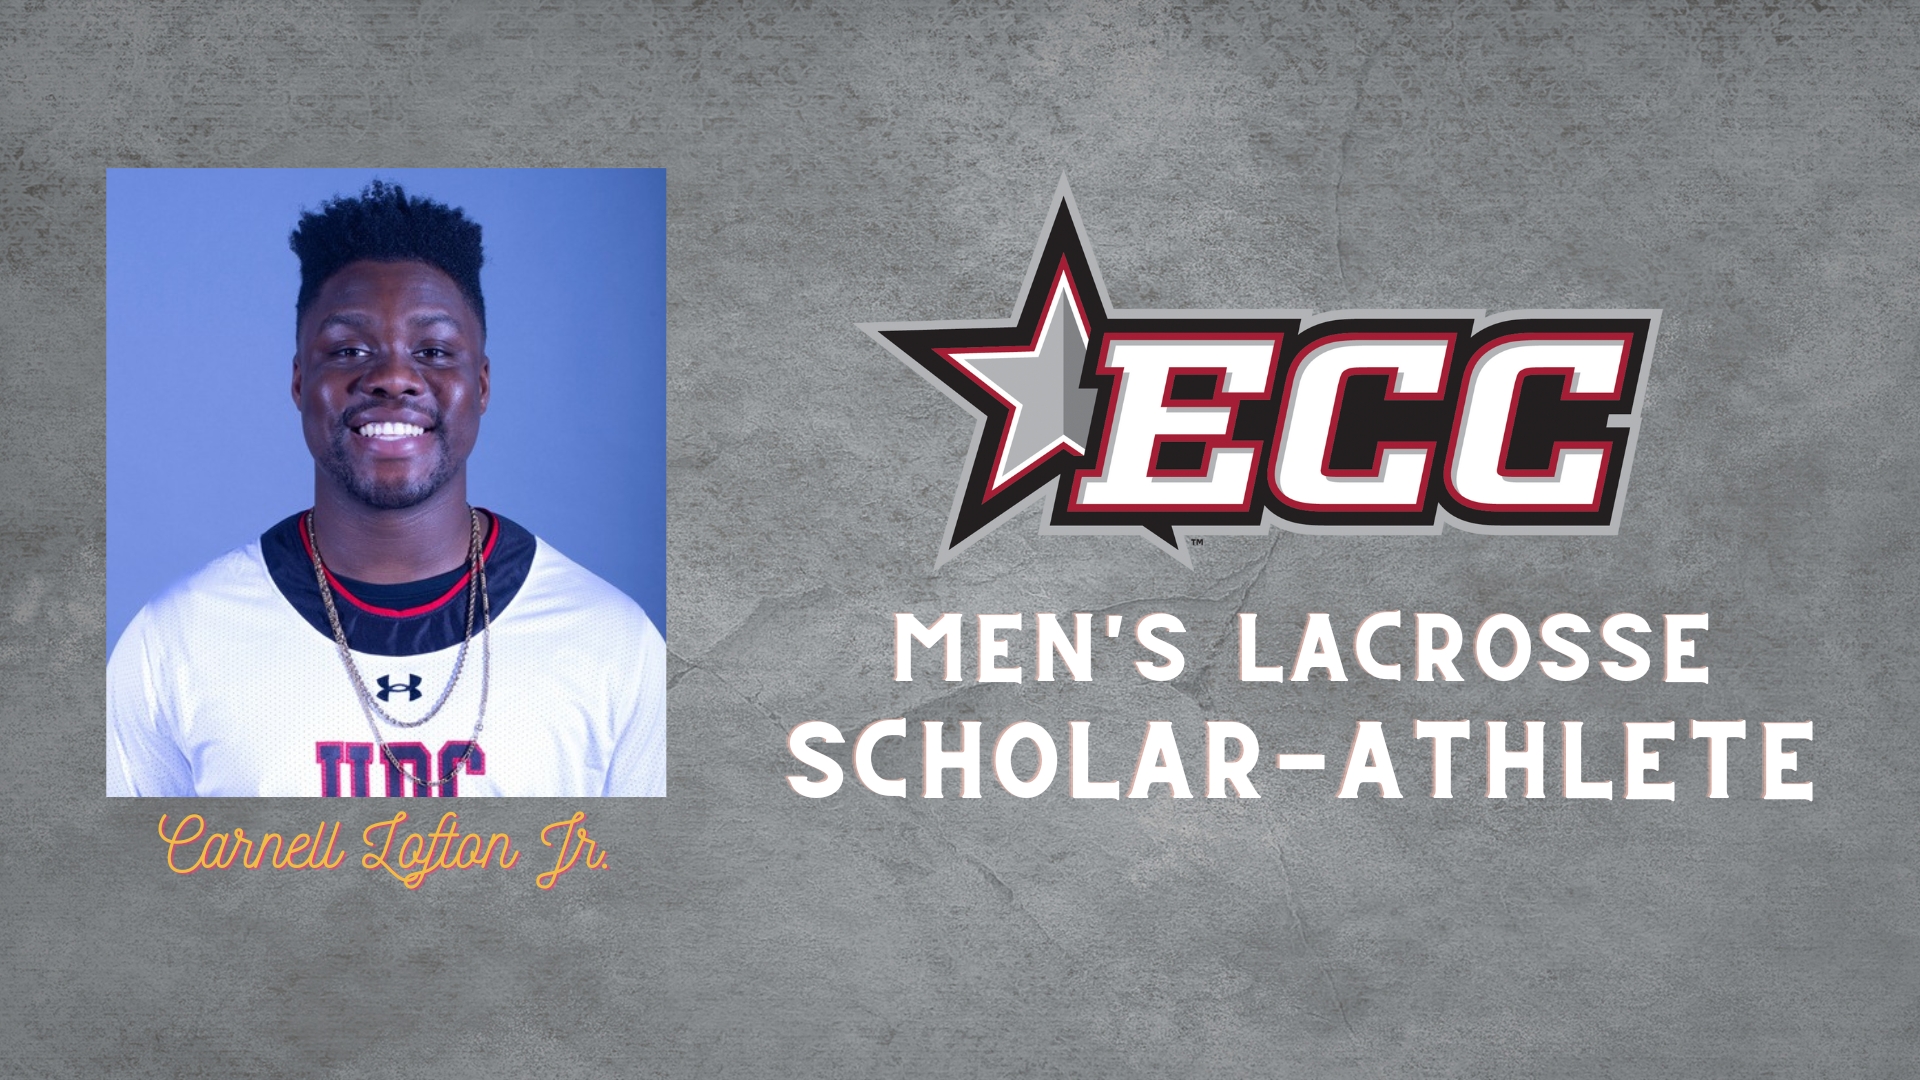 Carnell Lofton Jr. Named ECC Men's Lacrosse Scholar-Athlete